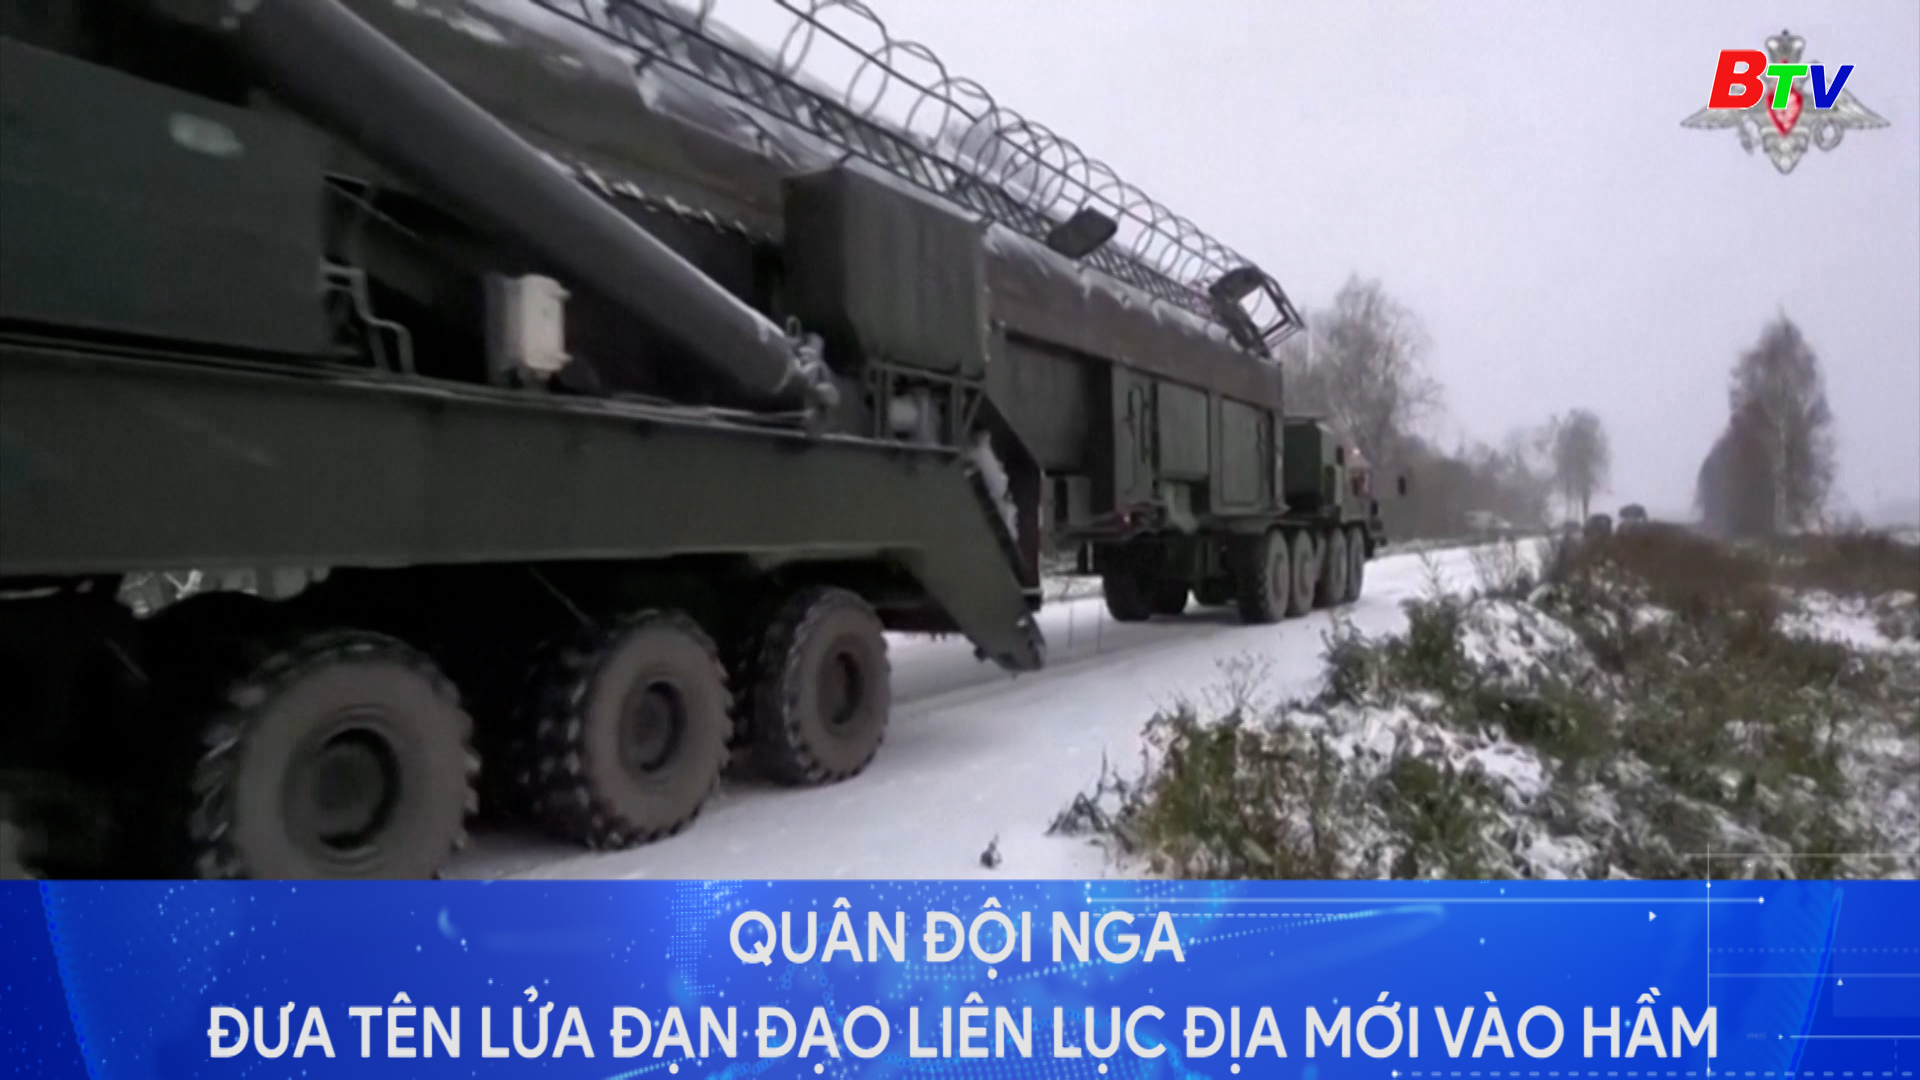 Quân đội Nga đưa tên lửa đạn đạo xuyên lục địa mới vào hầm